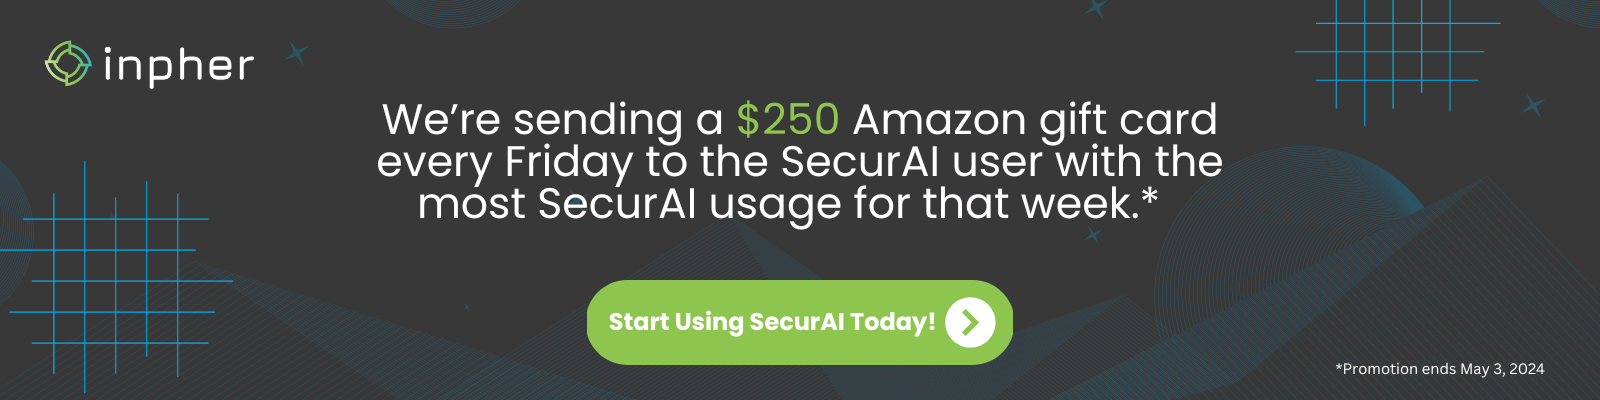 SecurAI $250 (1600 x 400 px)